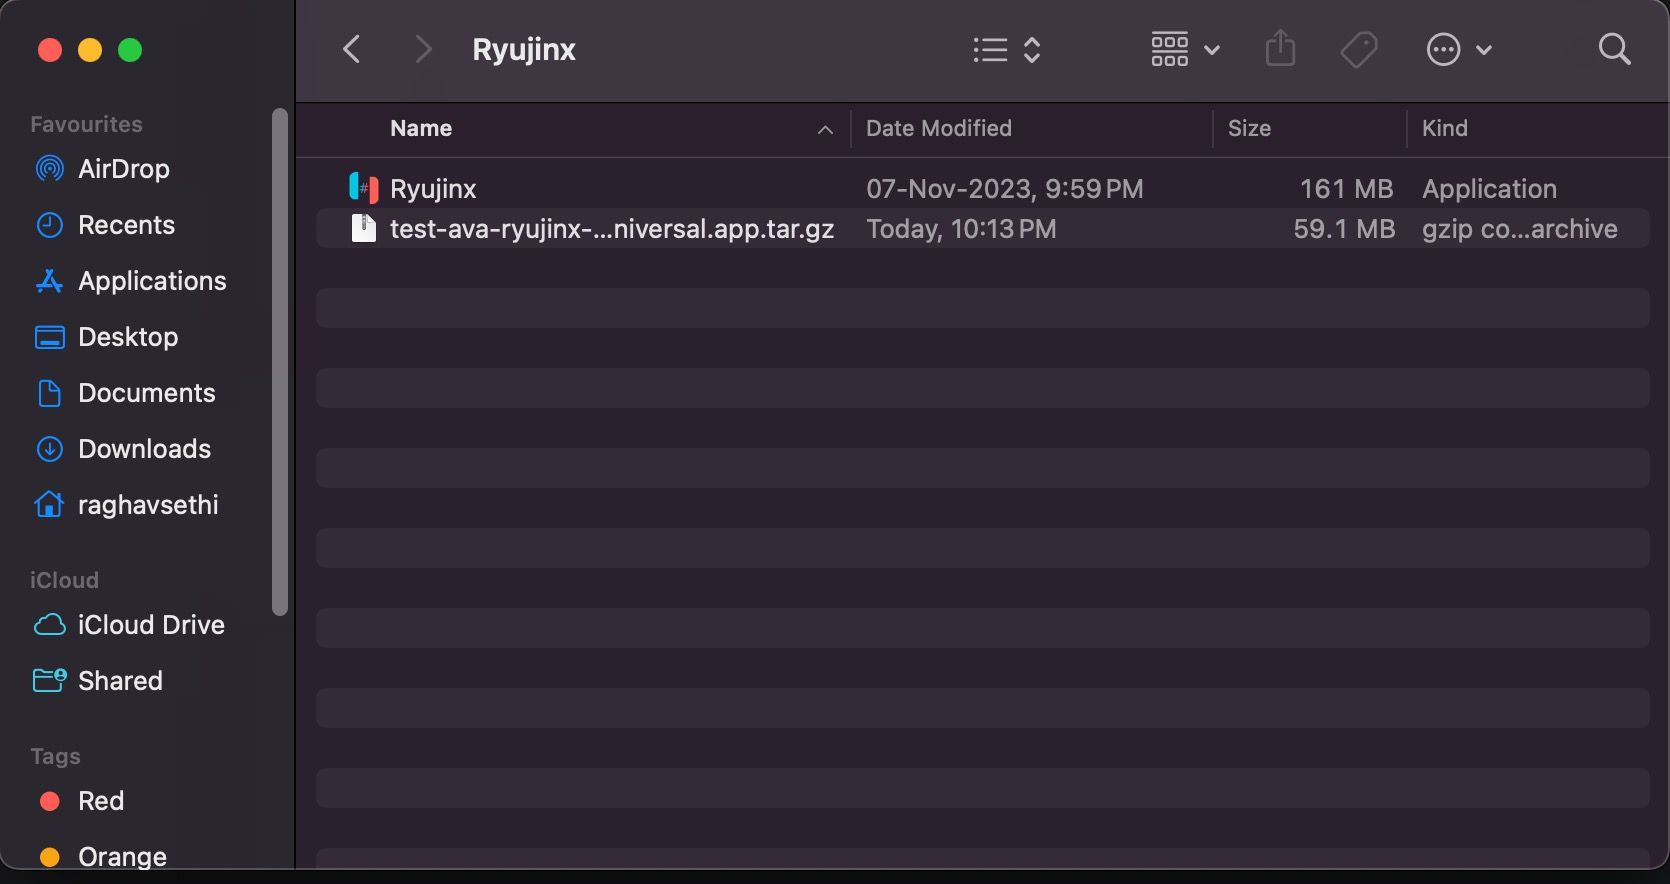 macOS Finder 視窗包含 2 個檔案：一個壓縮的 Ryujinx 檔案和一個 Ryujinx 執行檔。